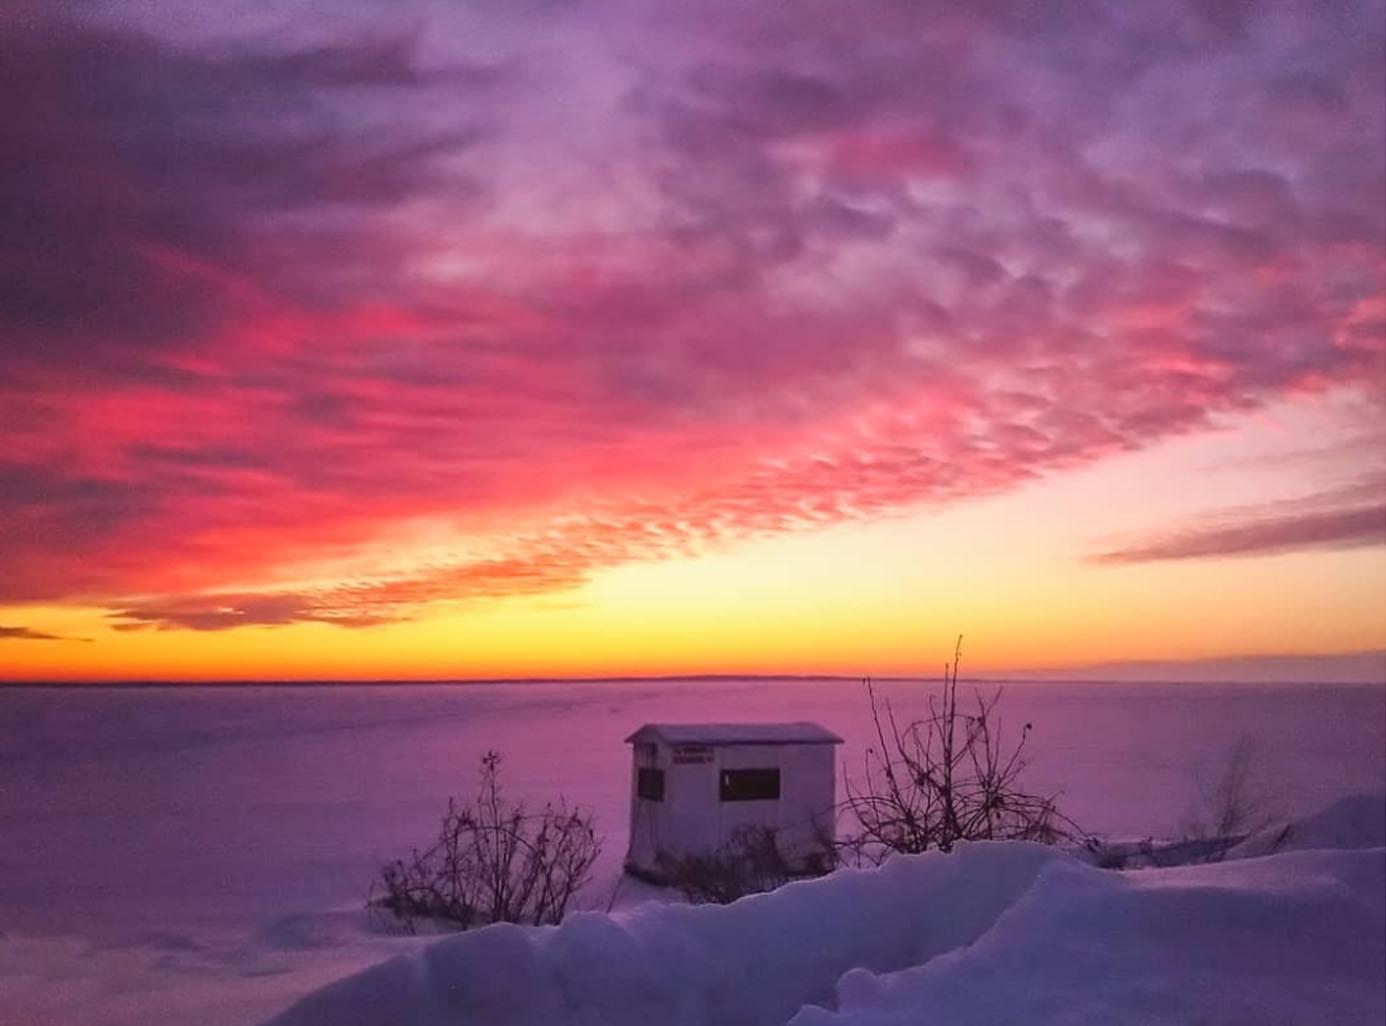 Ice fishing sunrise